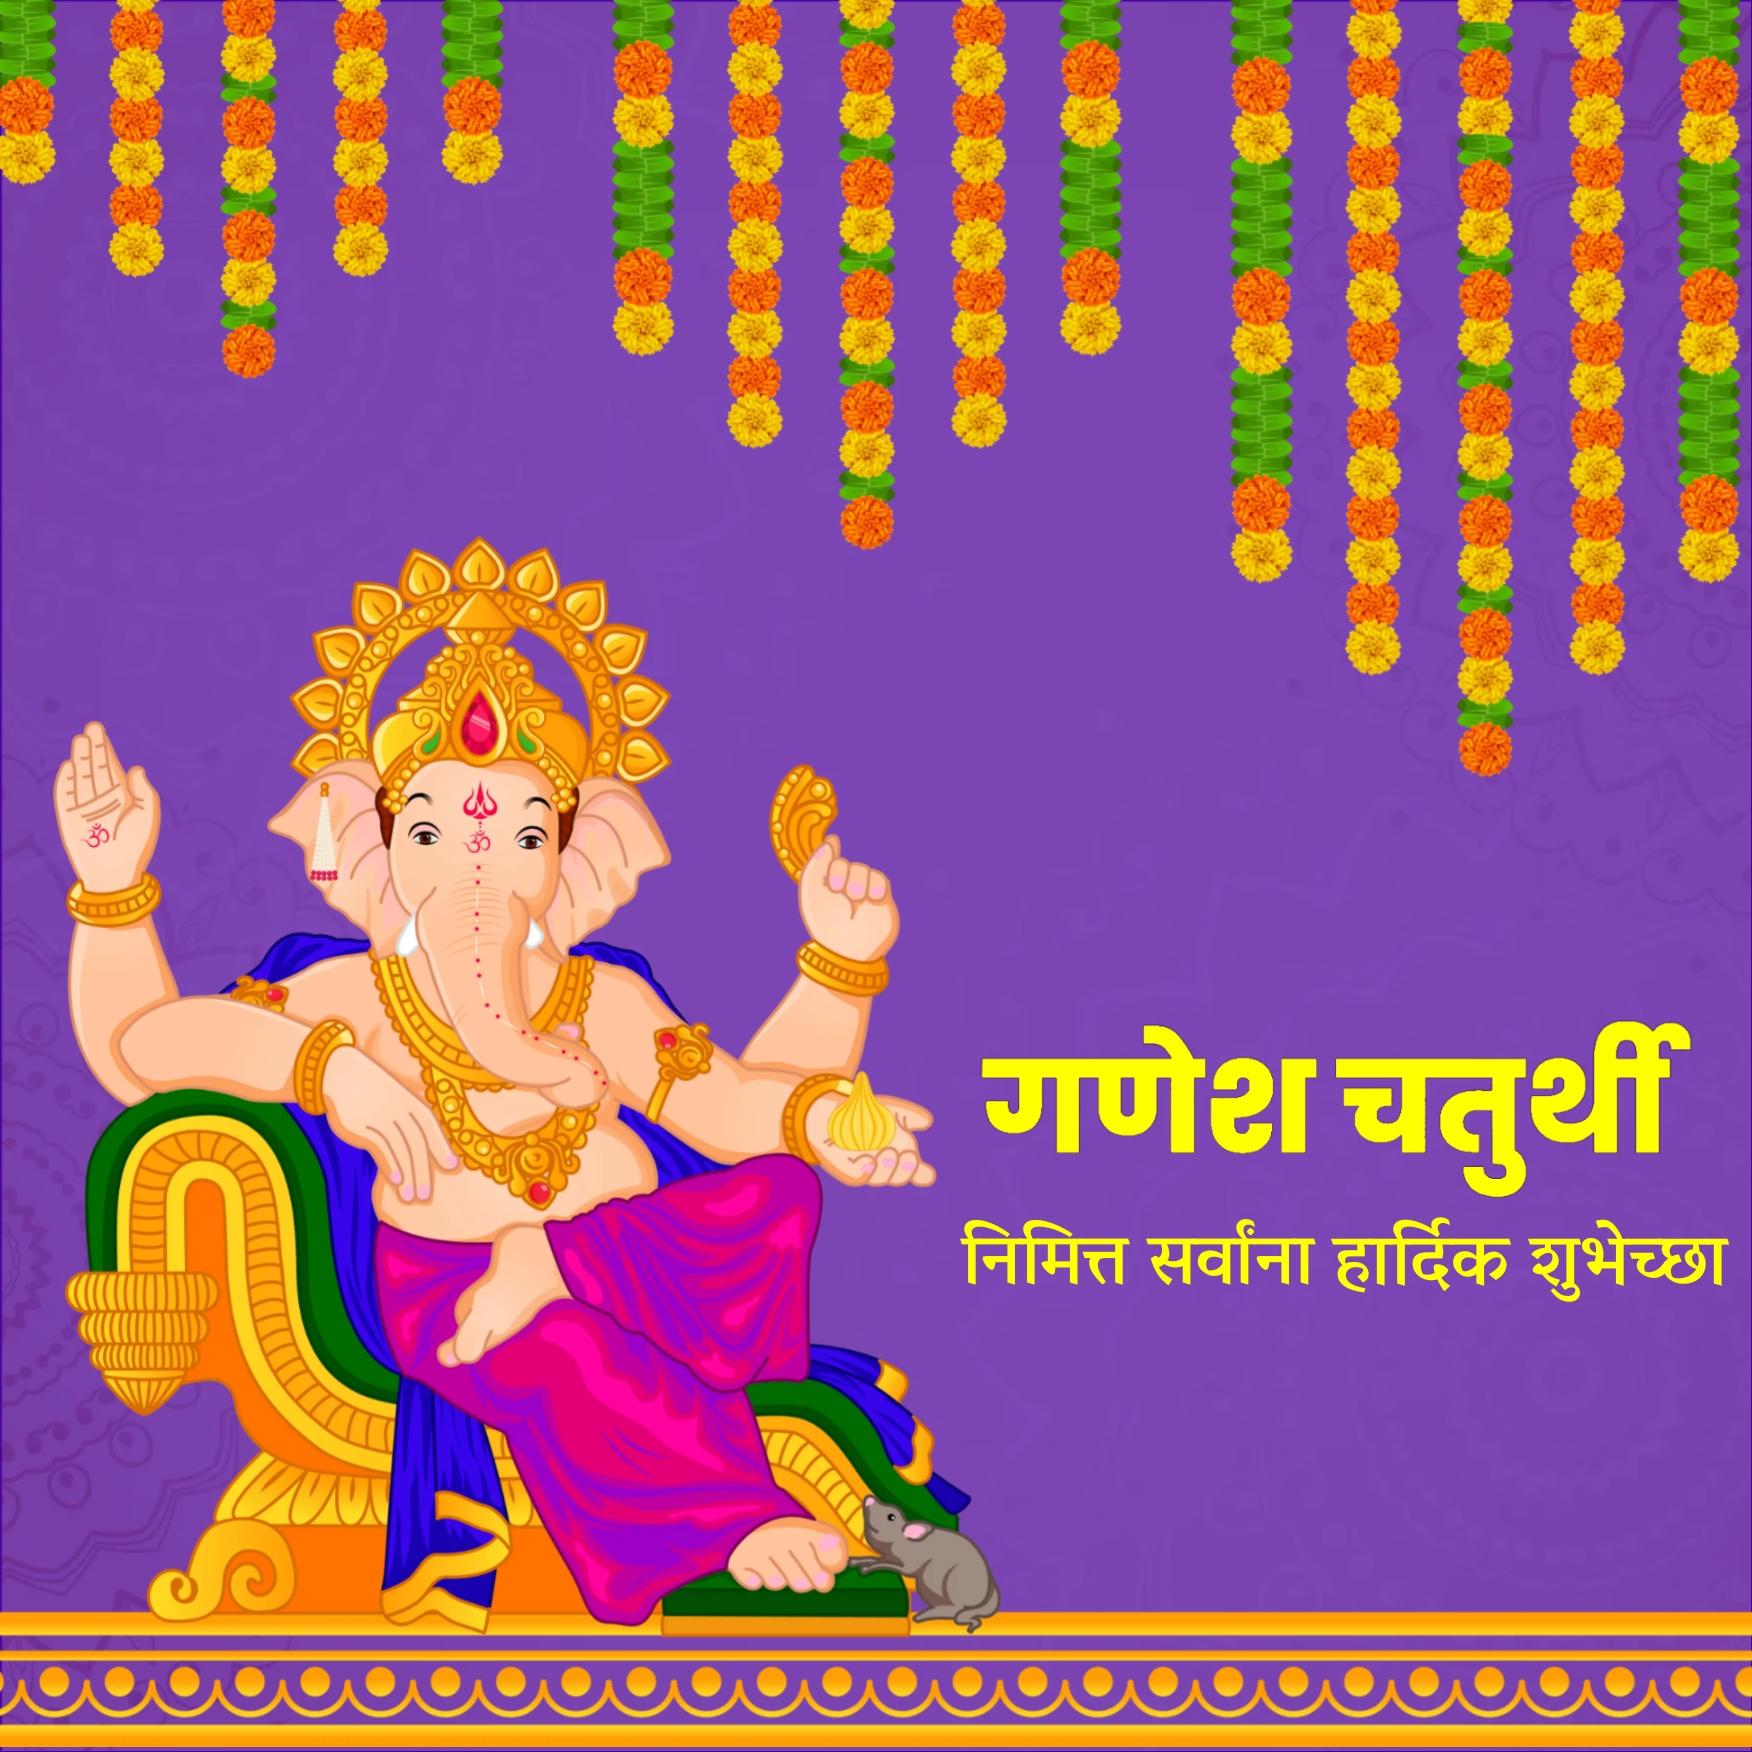 Happy Ganesh Chaturthi Images in Marathi - ShayariMaza